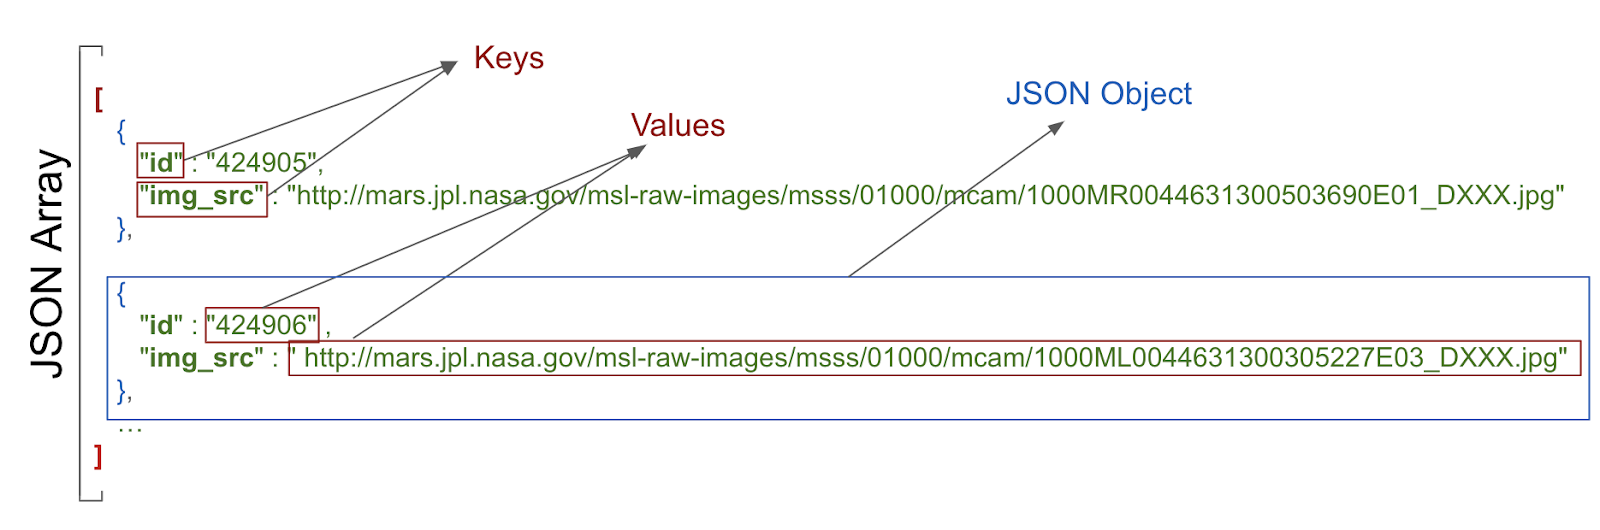 se muestran valores clave y objeto JSON